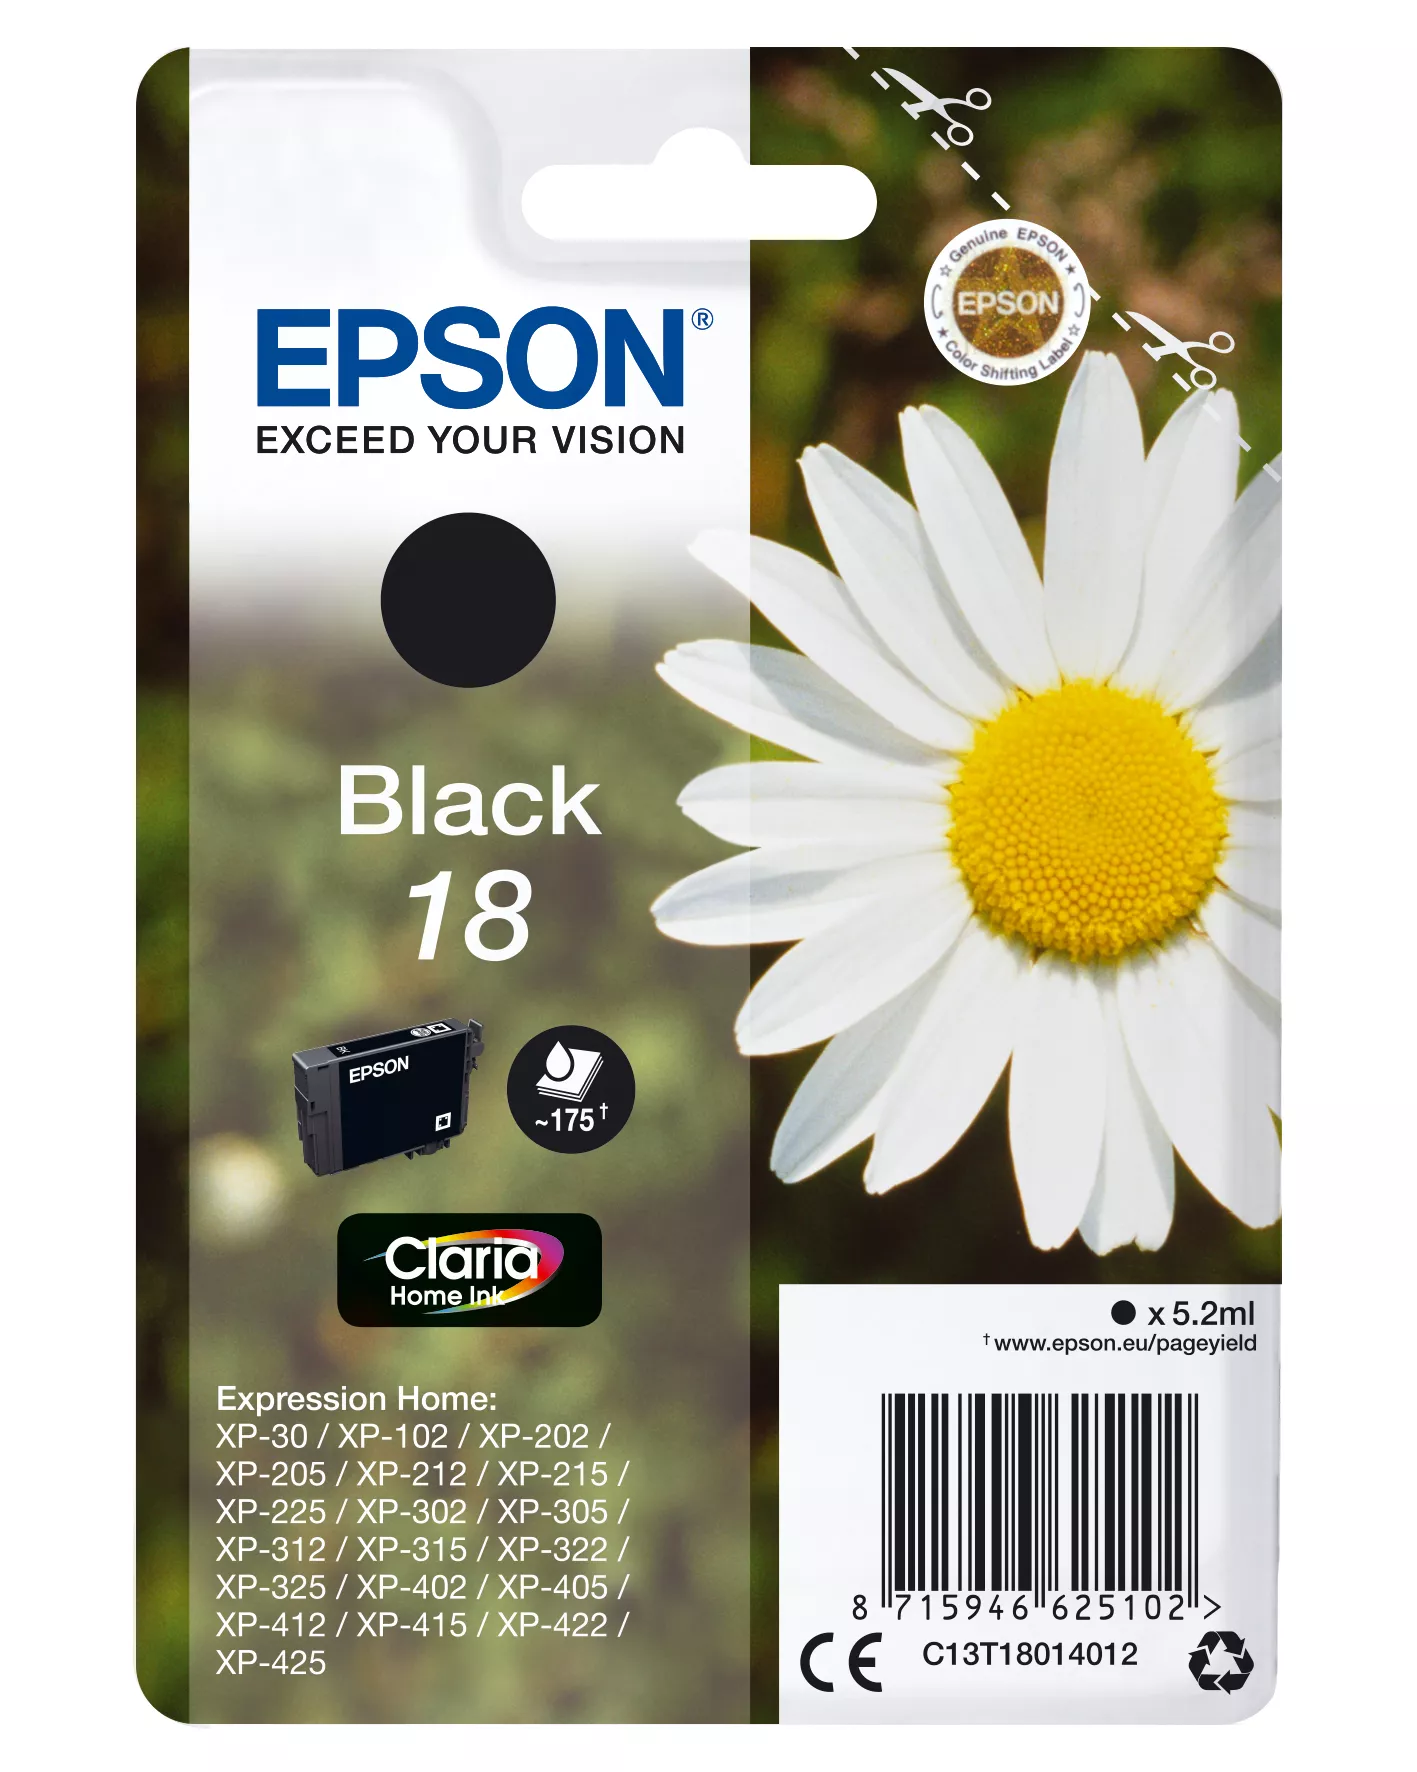 Achat EPSON 18 cartouche d encre noir capacité standard 5.2ml 175 au meilleur prix